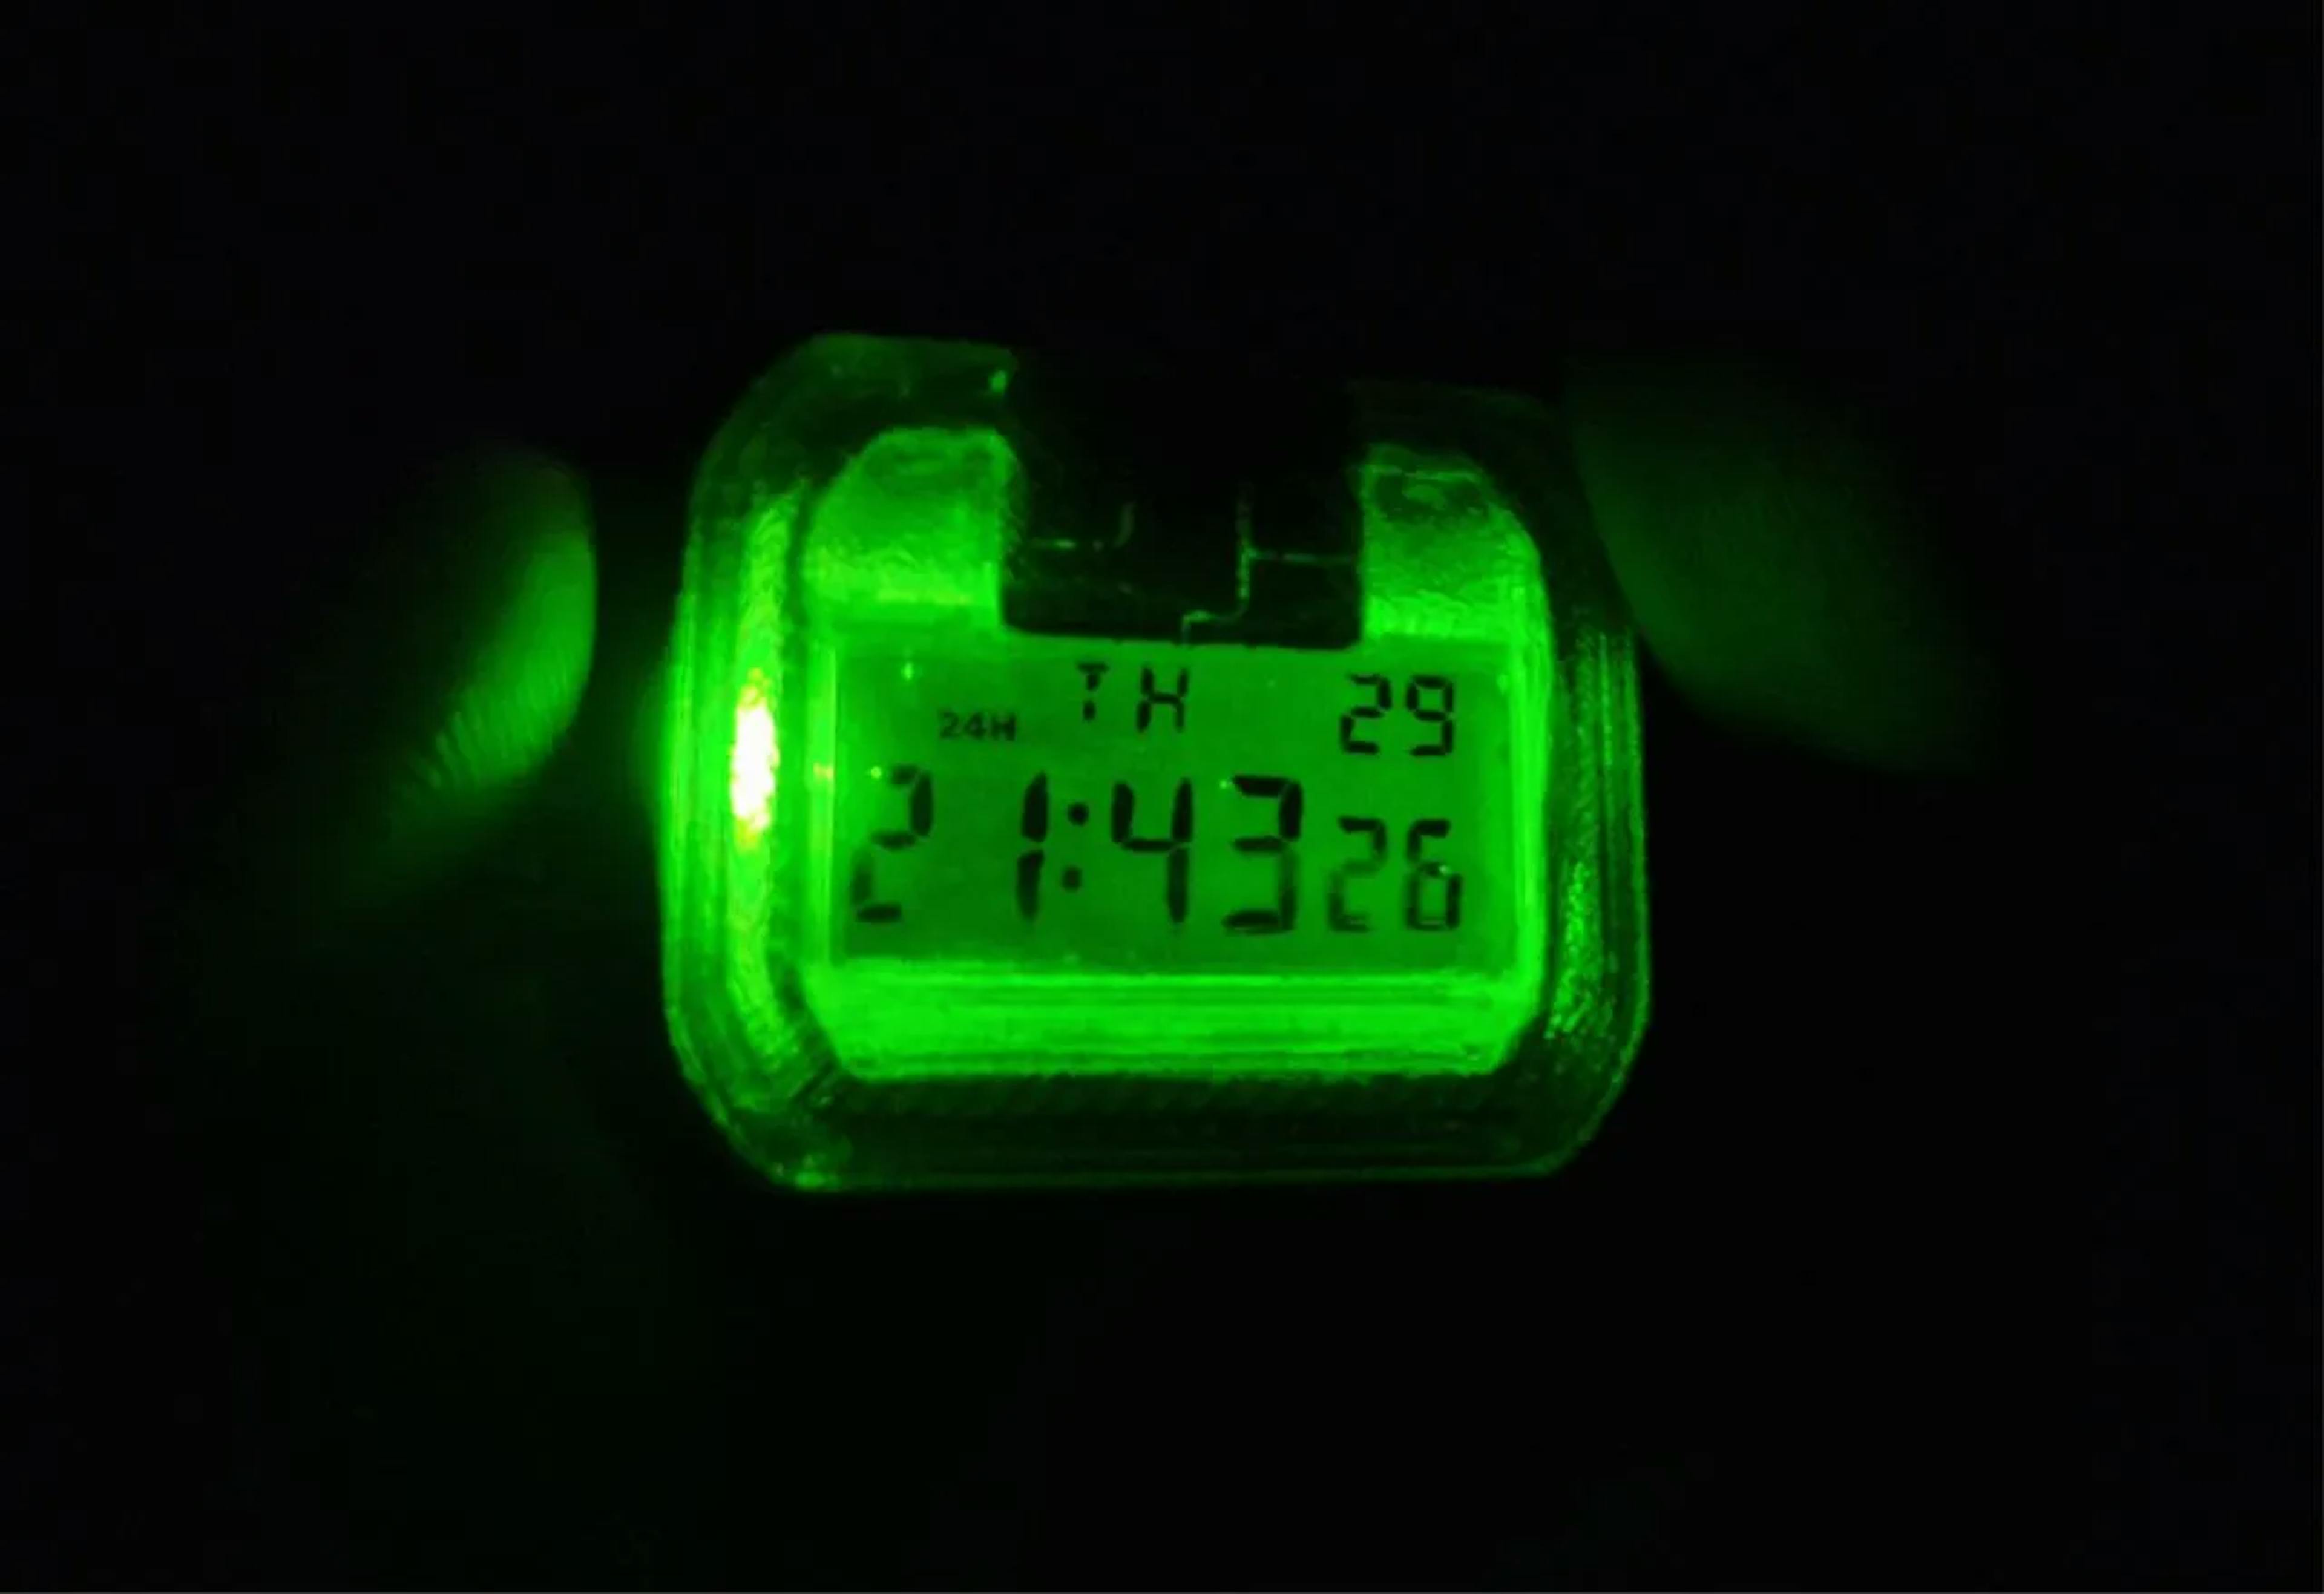 Vue nocturne de la montre numérique CASIO F-91W — rétroéclairage à DEL vert kryptonite